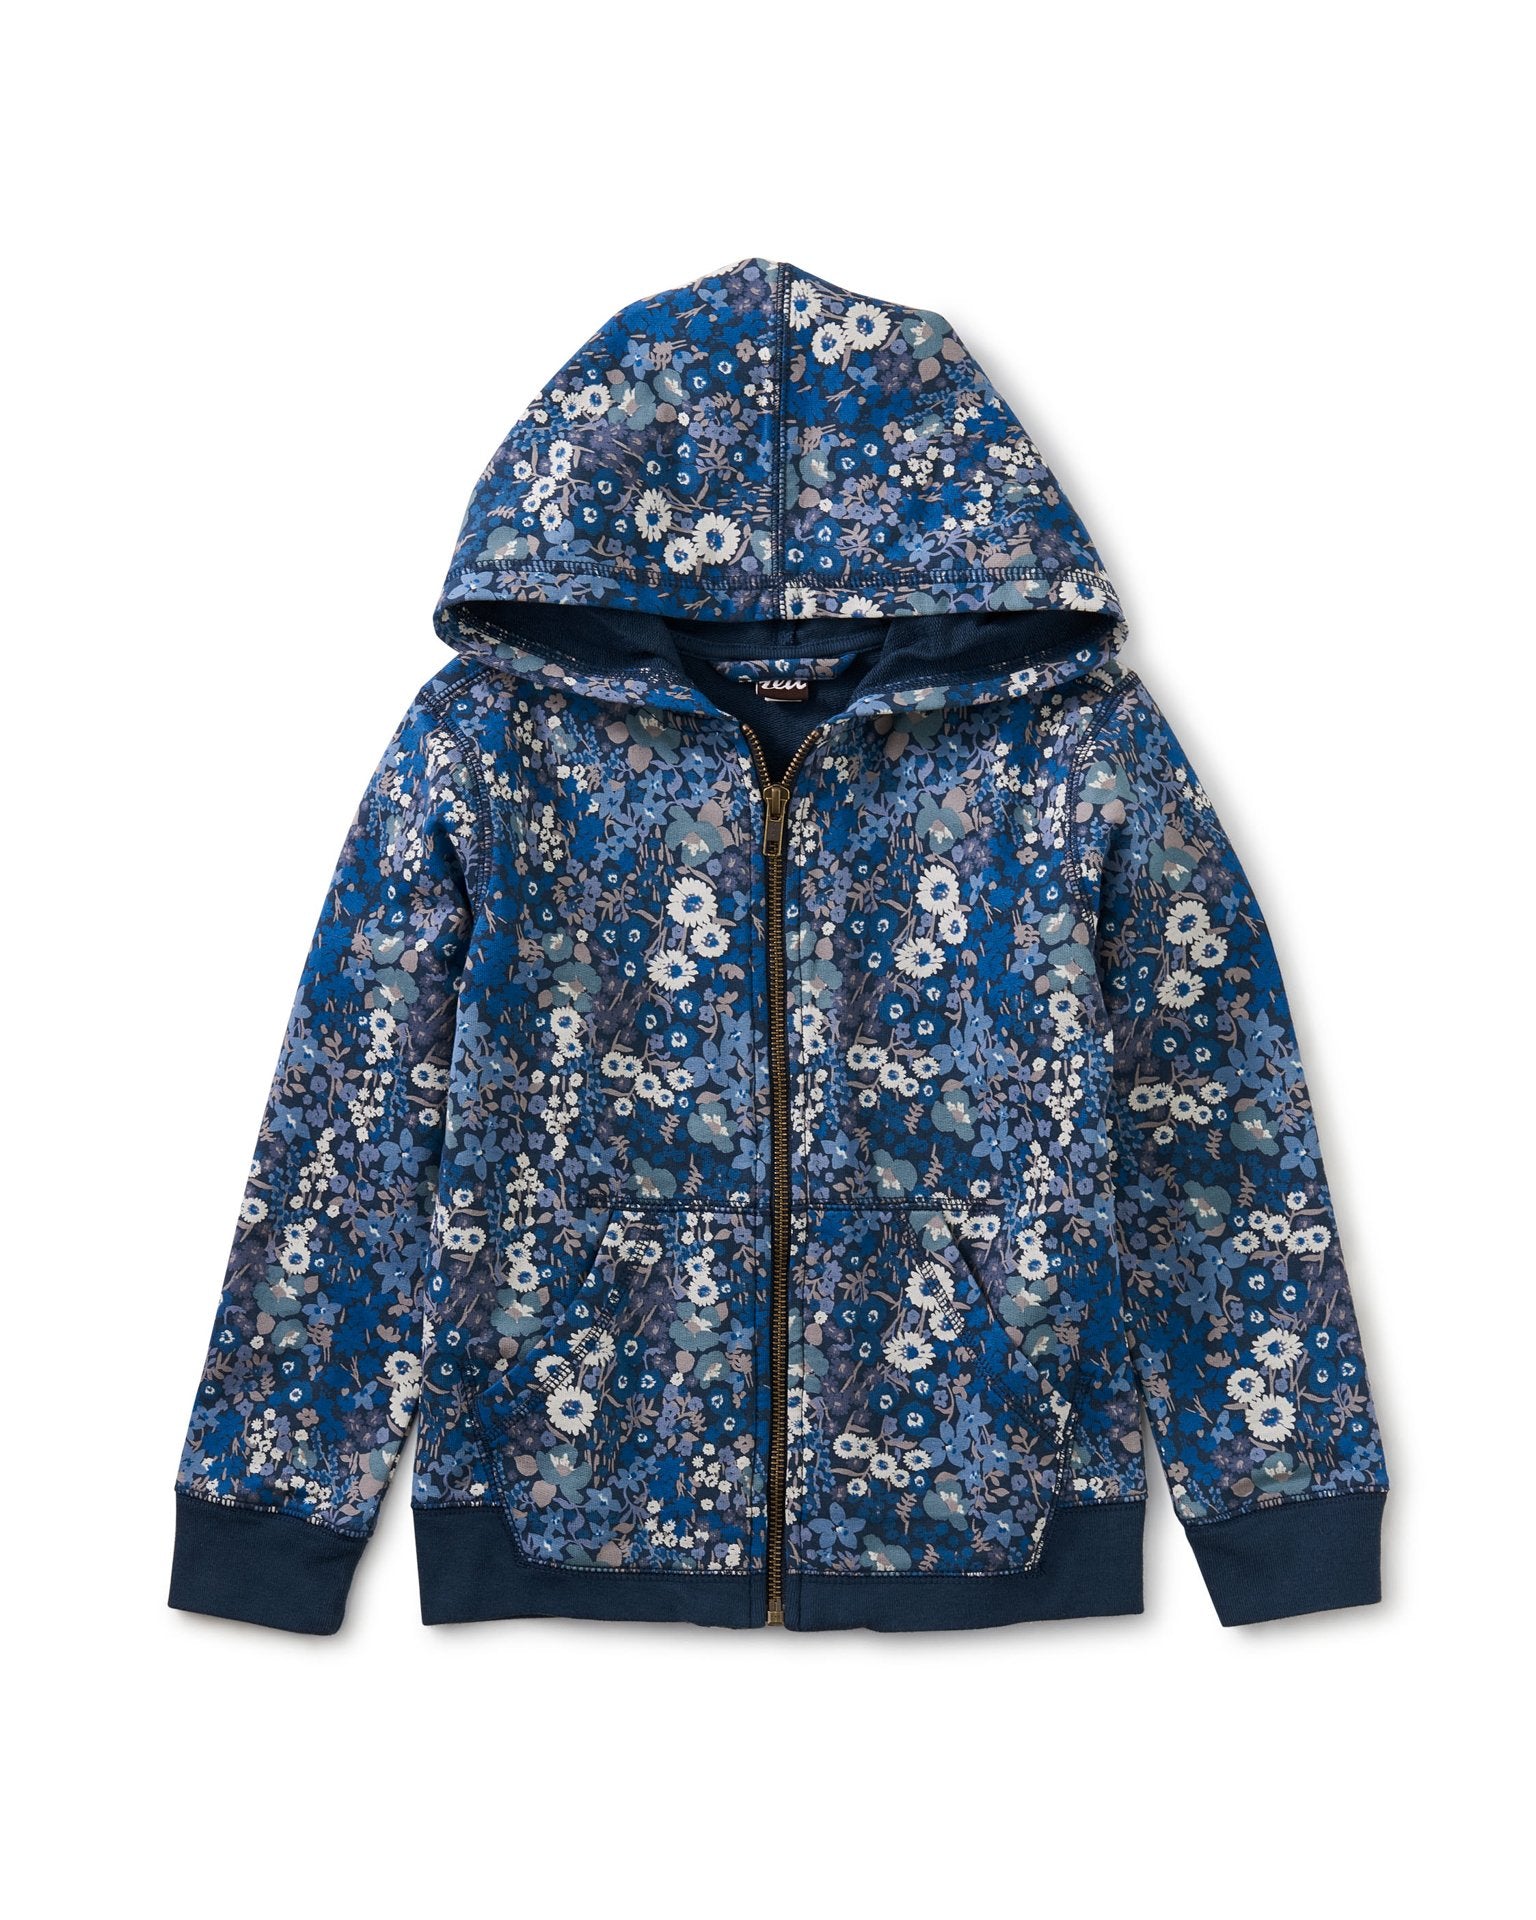 Little tea collection girl zip hoodie in garden blues